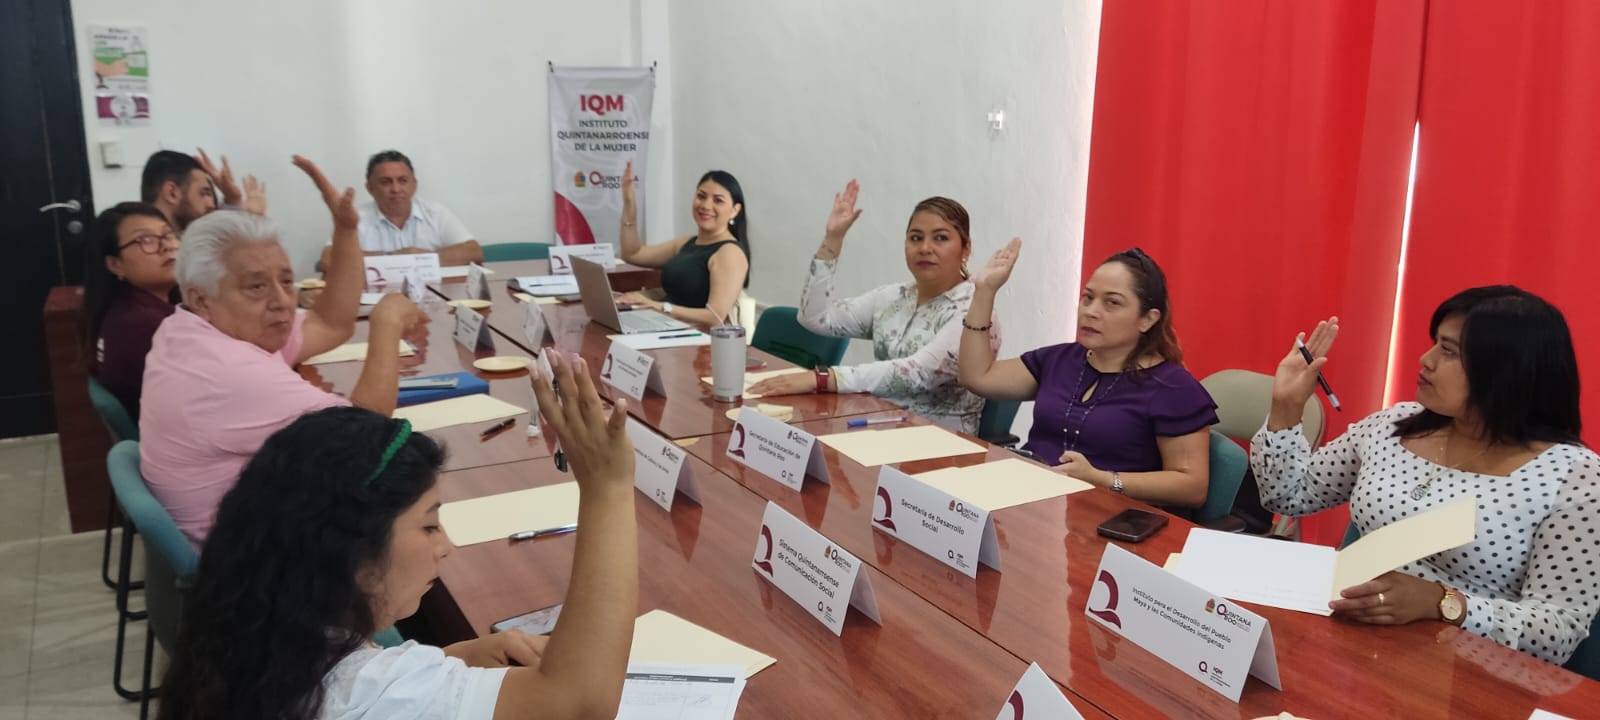 Histórica participación en Convocatoria “Mujer Quintanarroense Destacada”: IQM